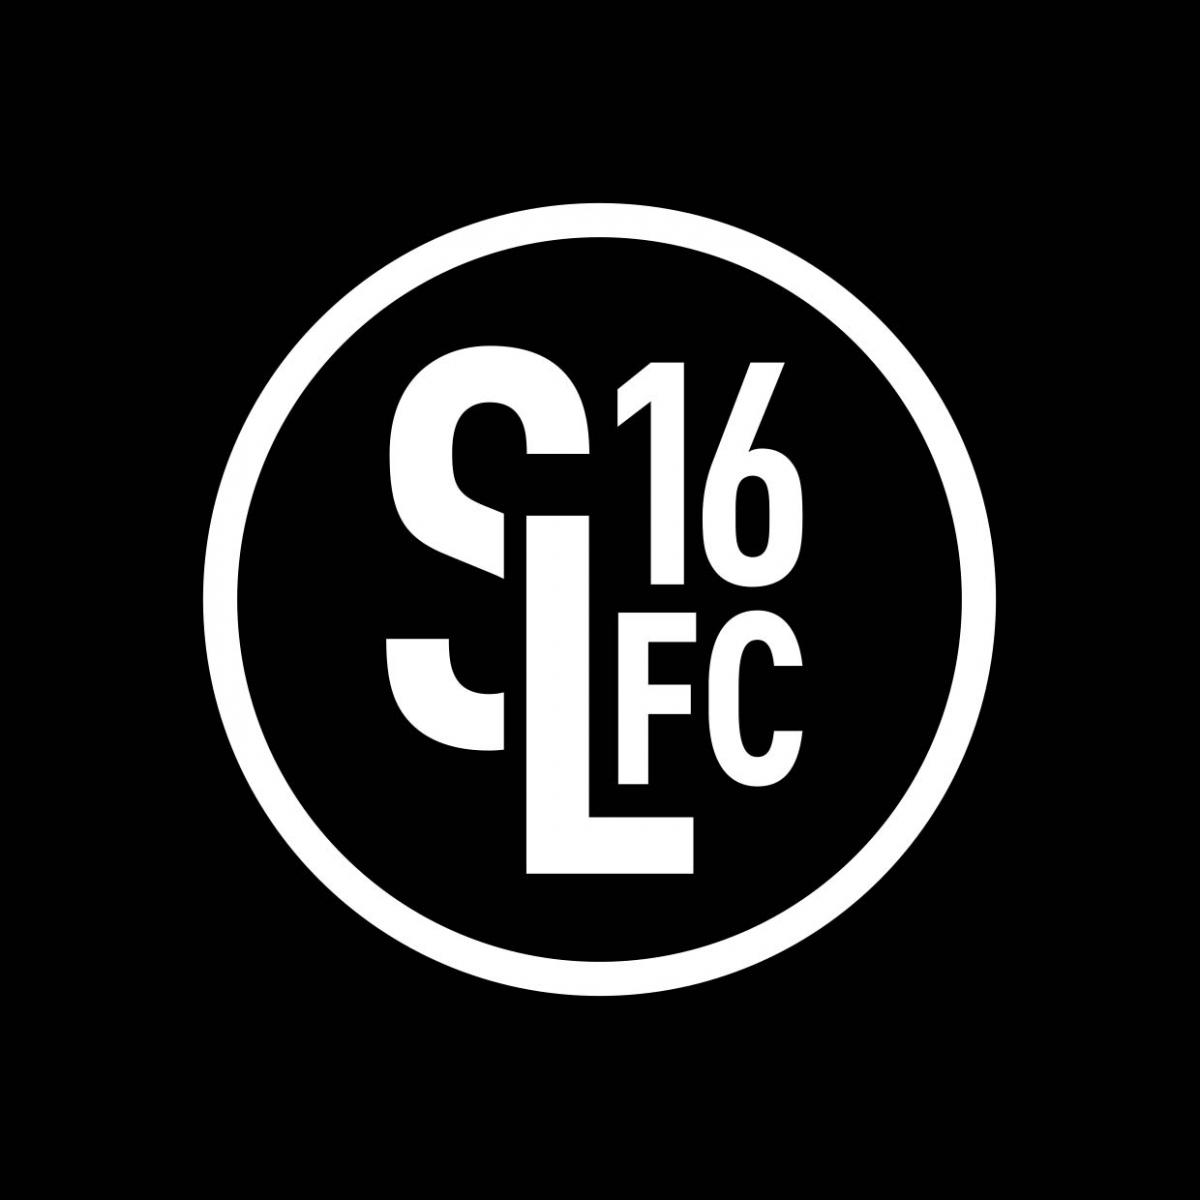 SL16 FC